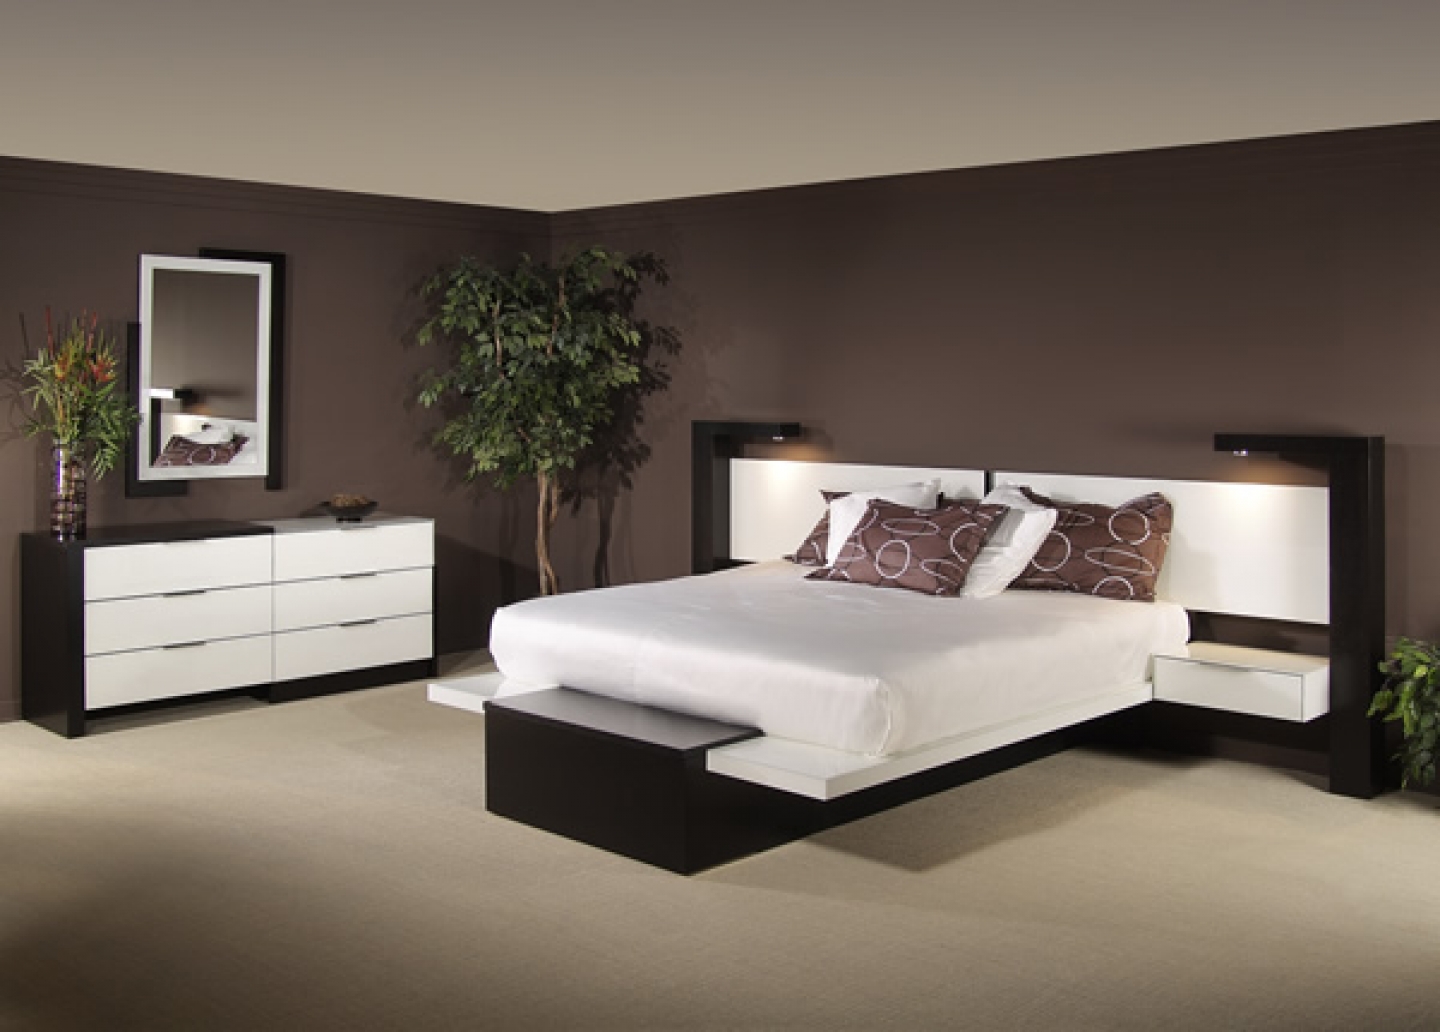 HD Modern Design Home Decor Wallpaper Bedroom Furniture Designing